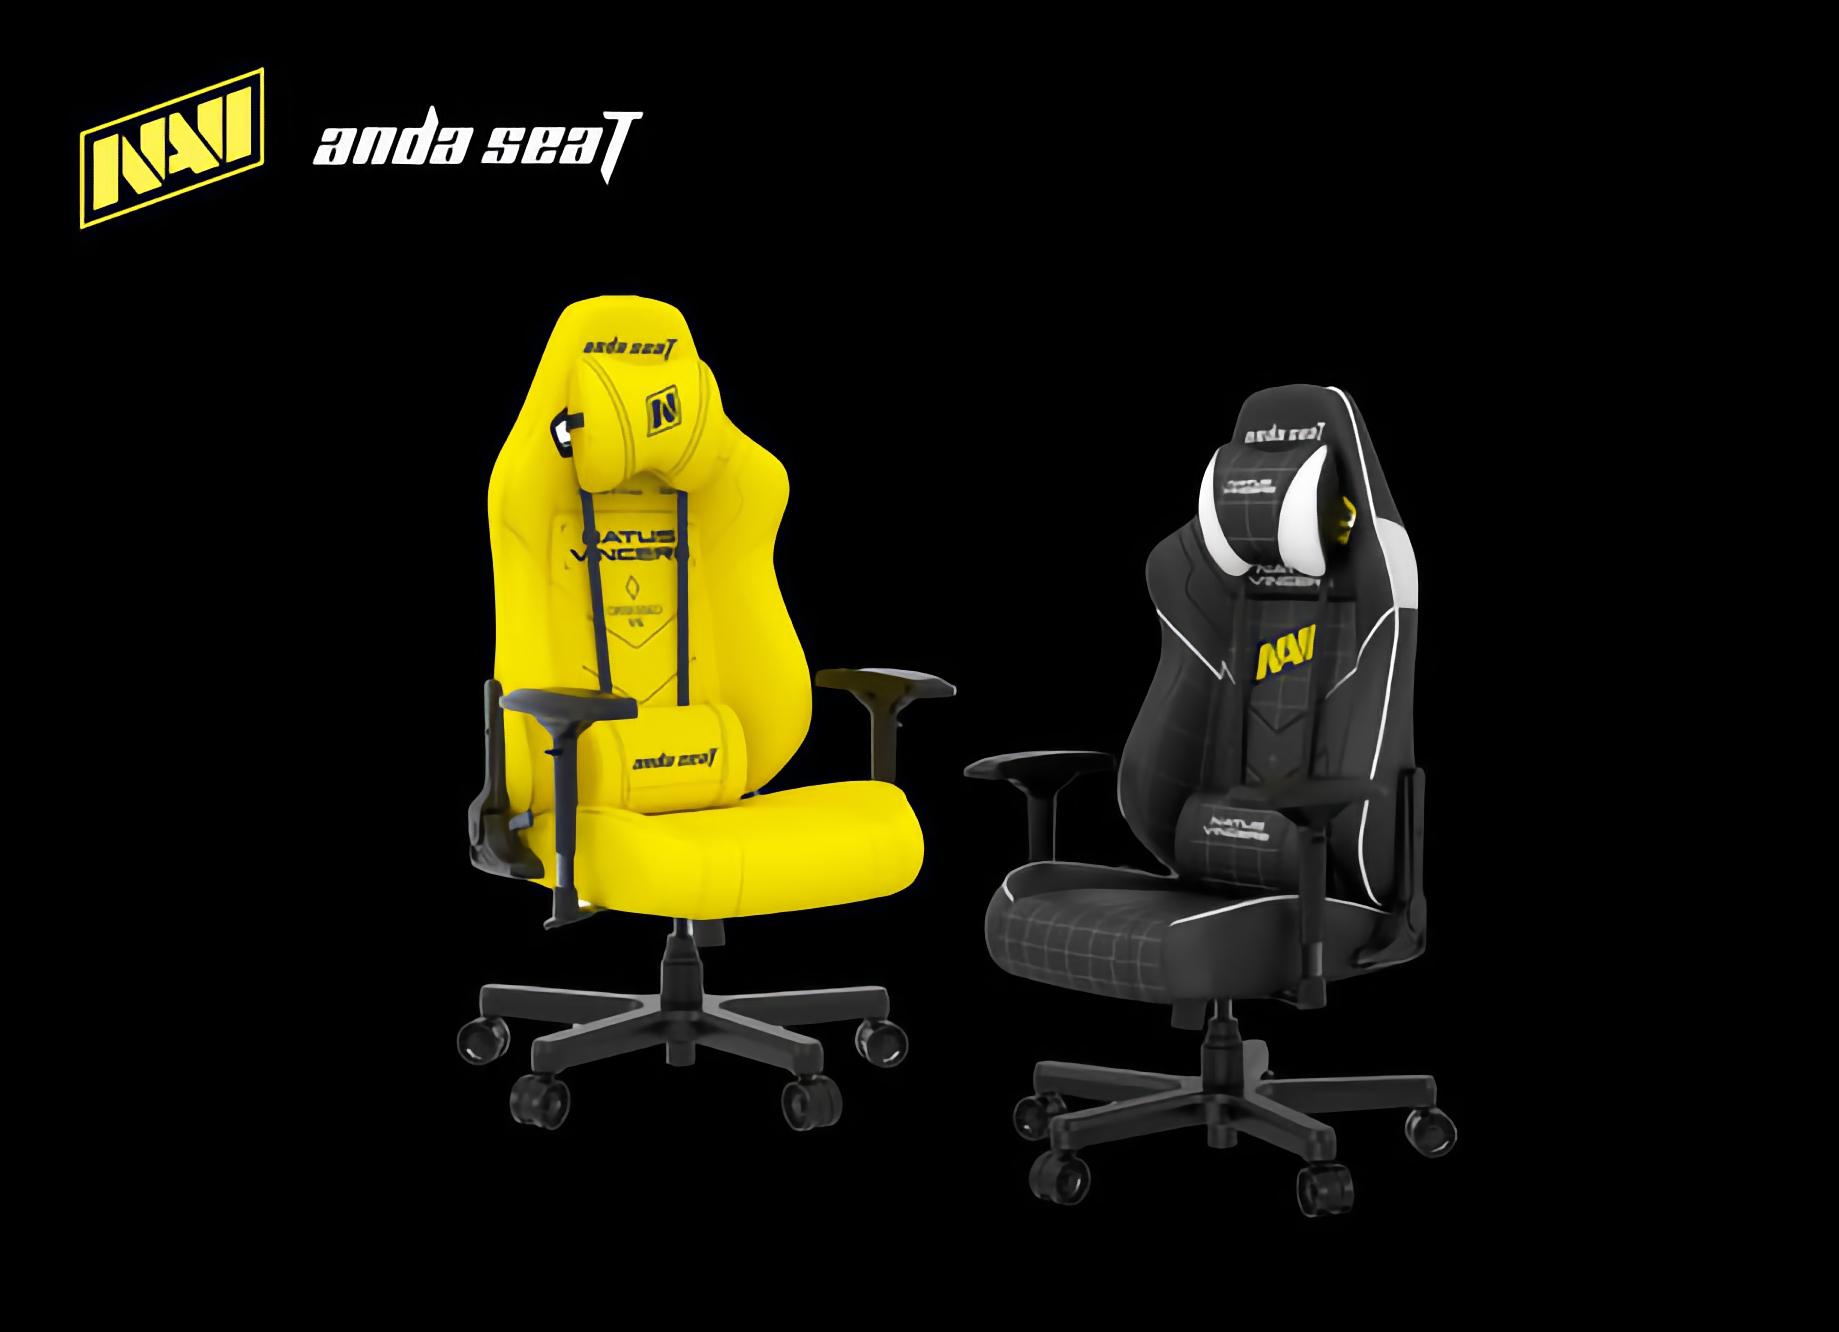 Anda Seat презентувала ігрове крісло Navi Edition, за попереднім замовленням дають знижку 10%